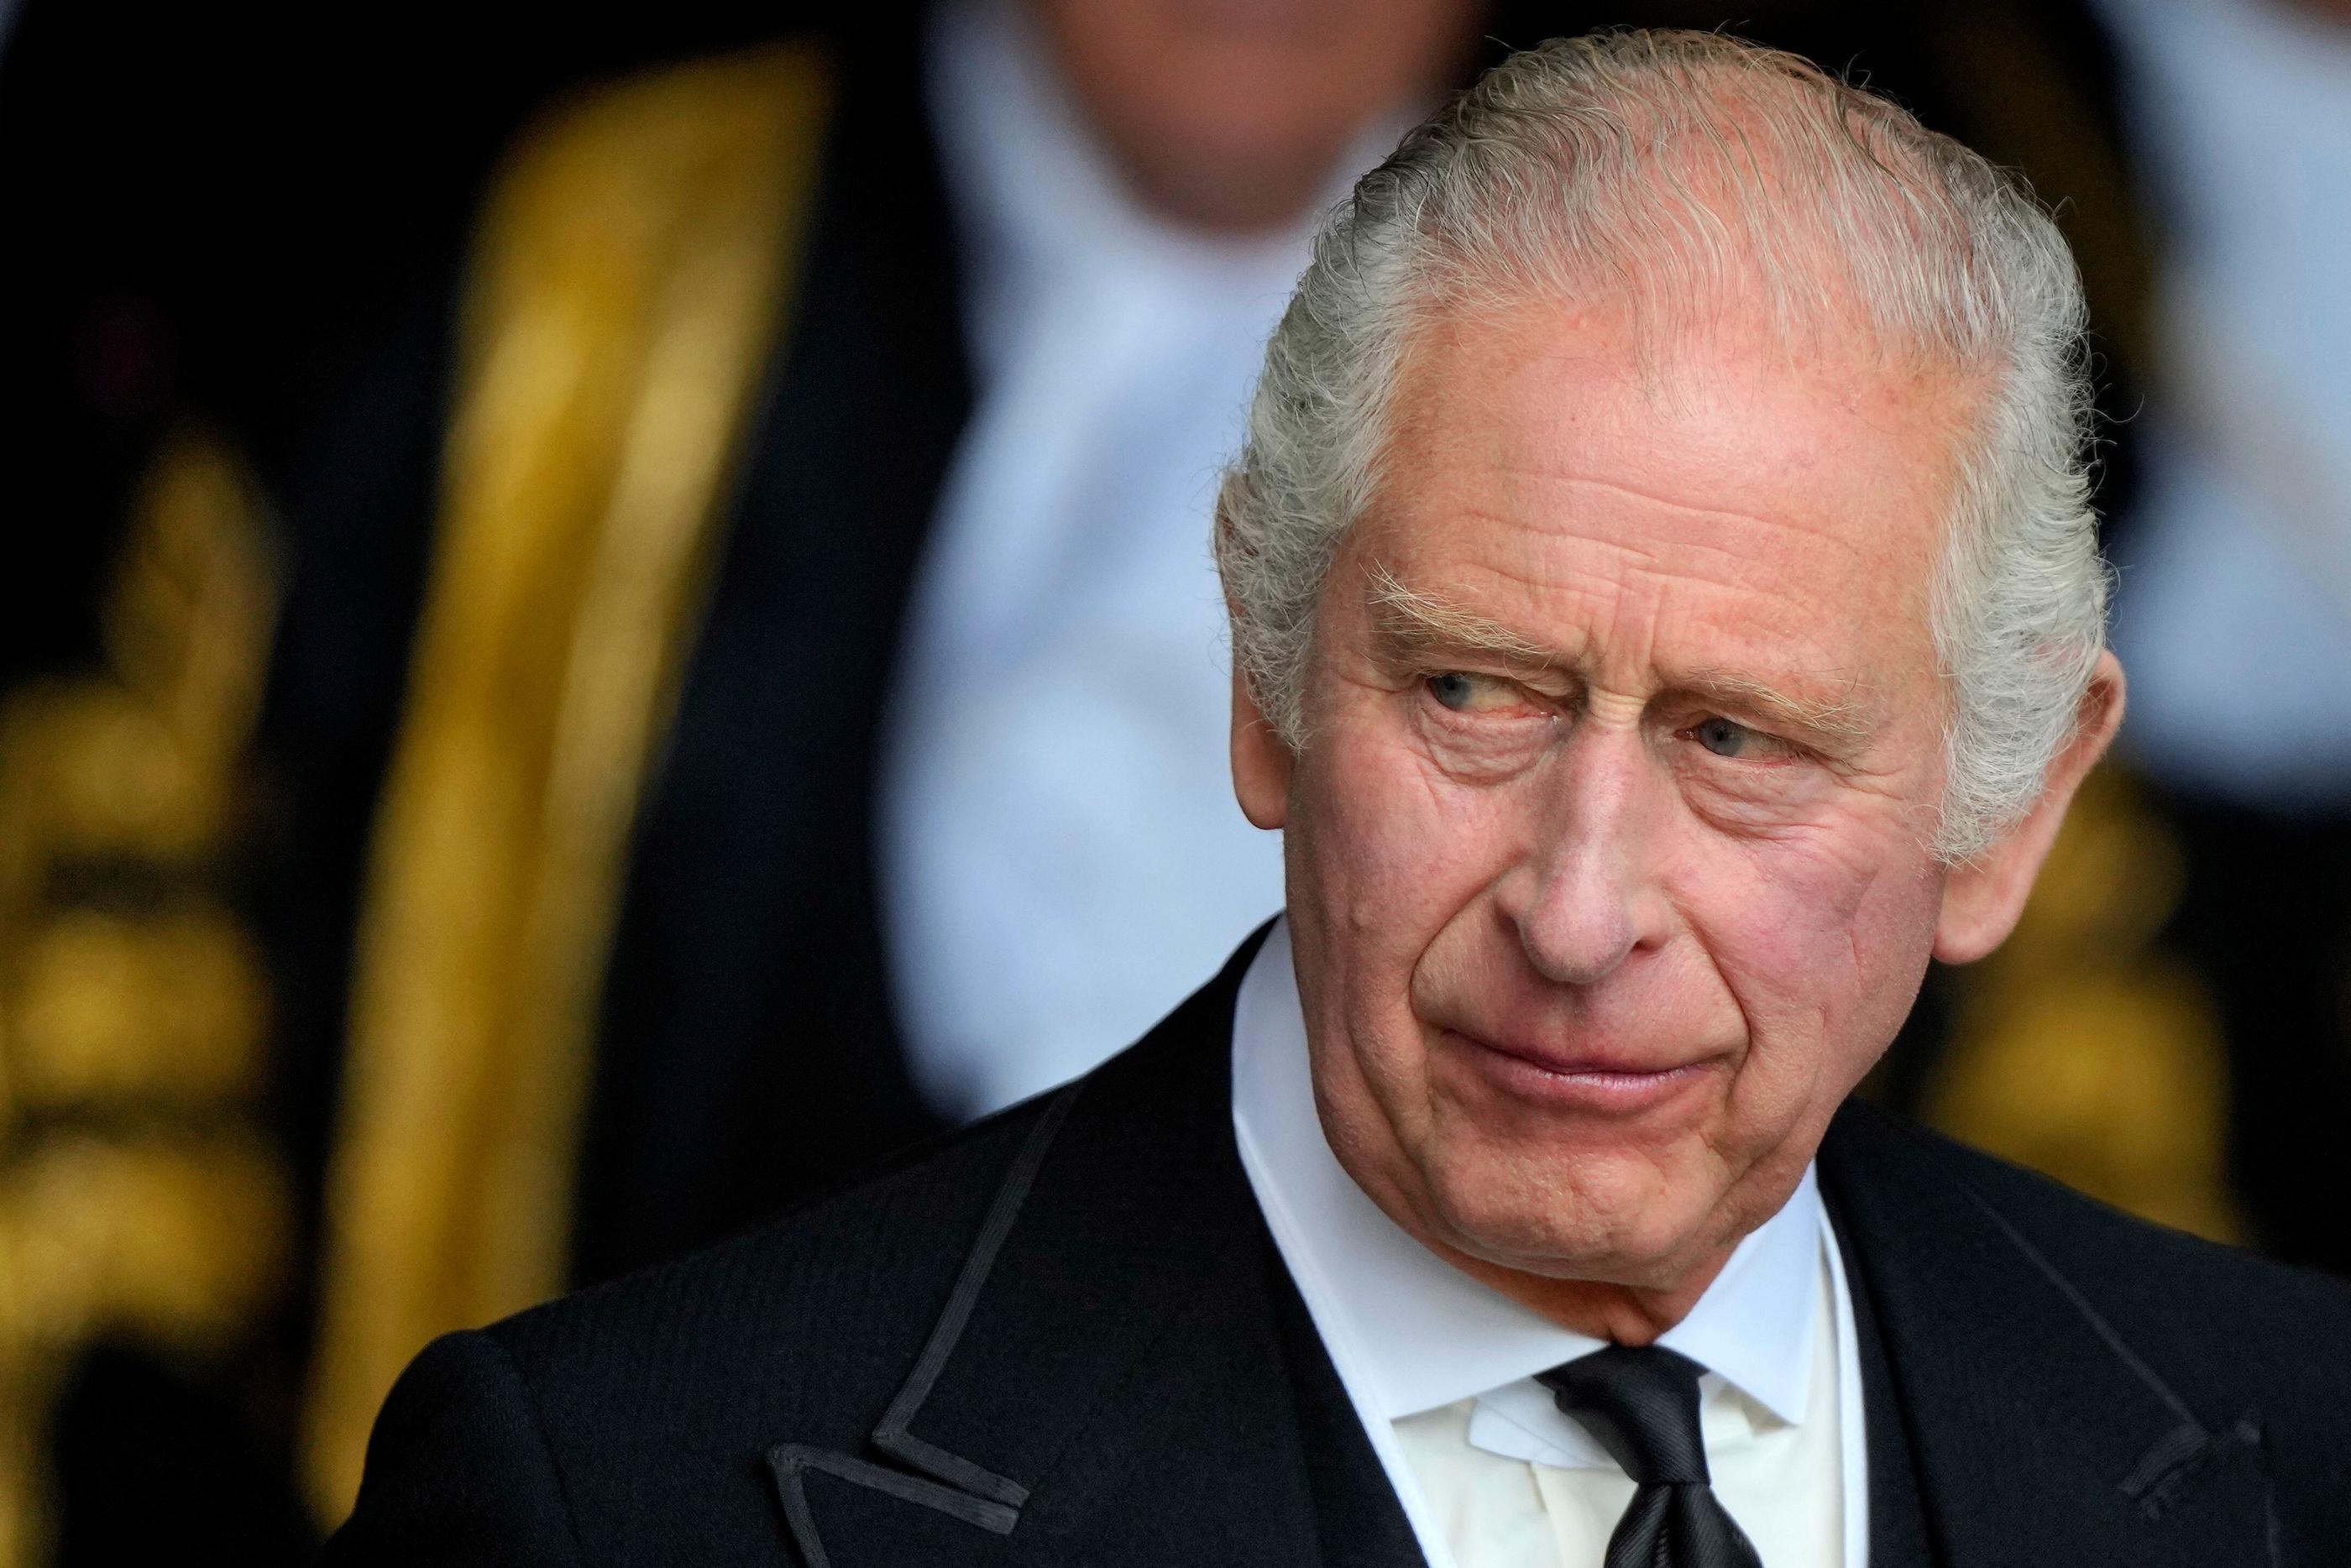 Le roi Charles III, ici au palais de Westminster, à Londres, le 12 septembre 2022. POOL/AFP/Markus Schreiber